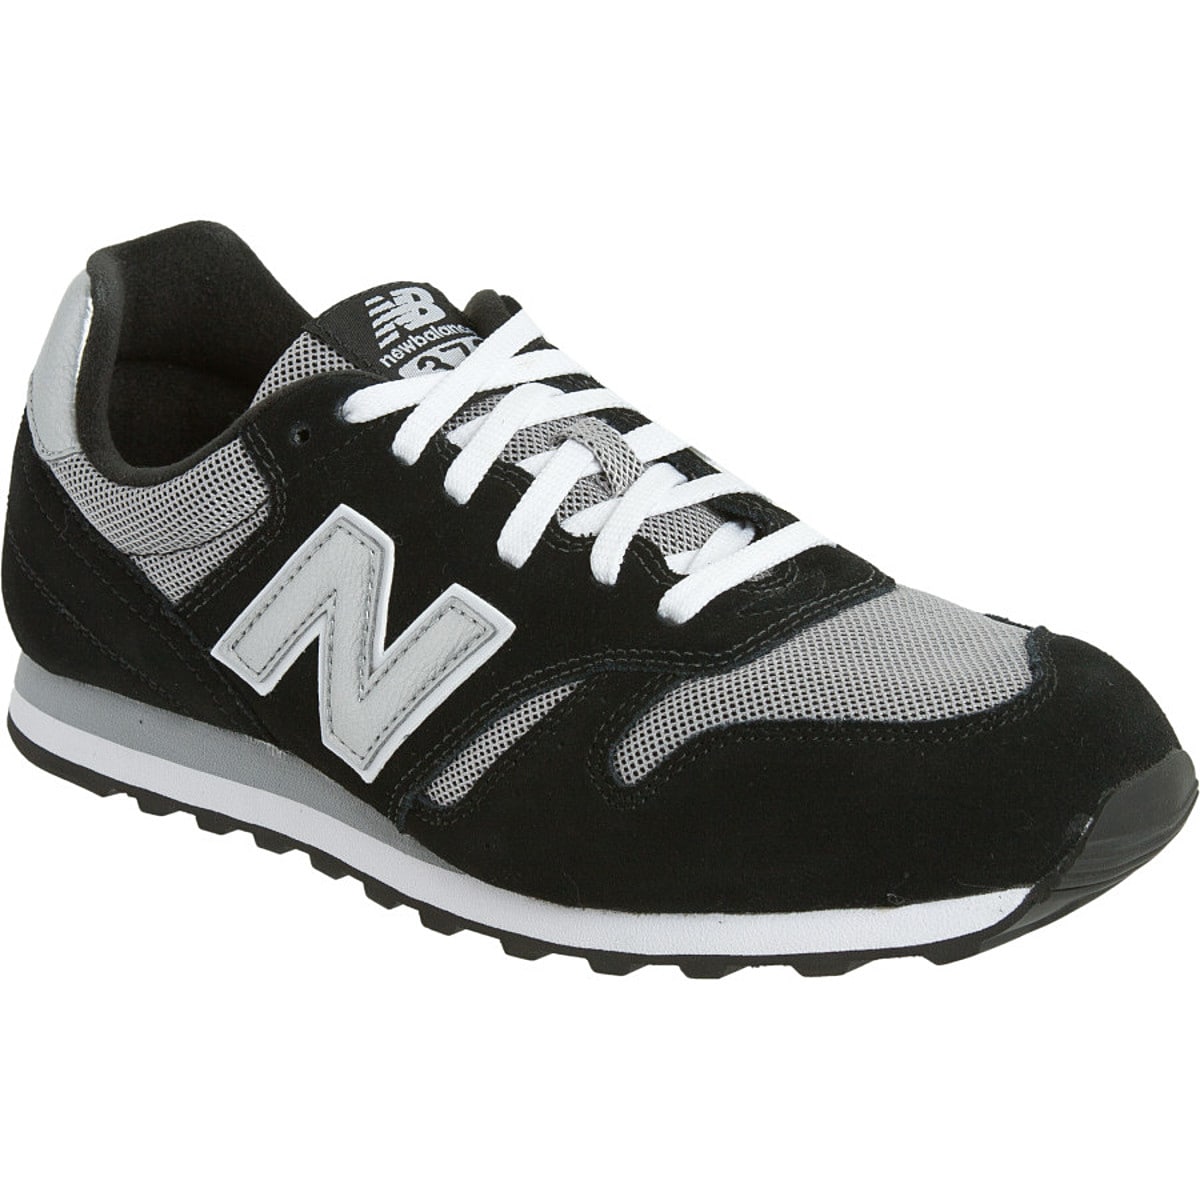 New Balance M373 Shoe - Men's - Footwear